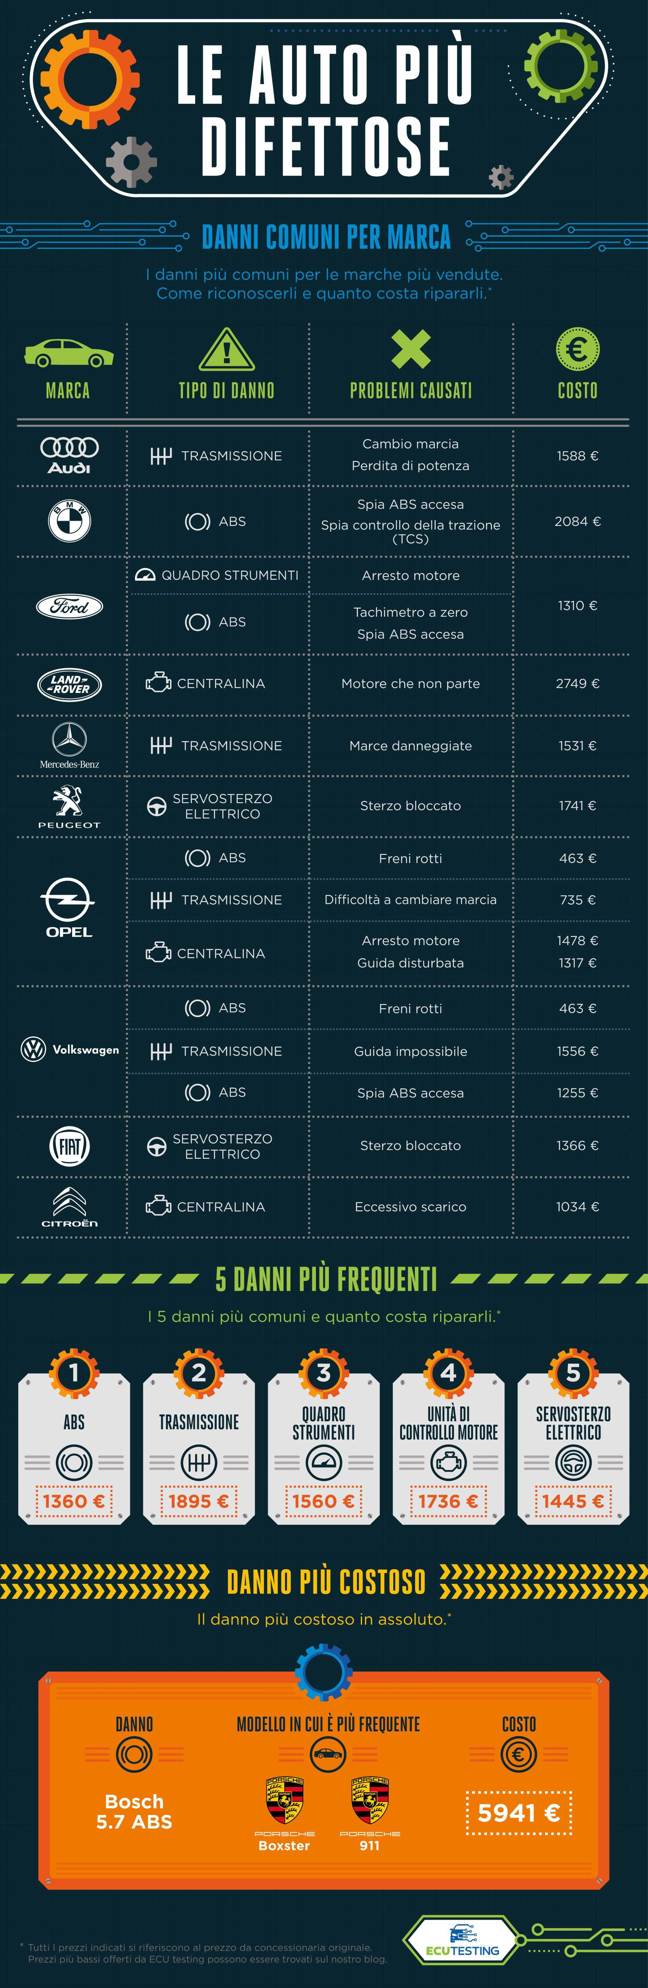 Infographic - Le Auto Più Difettose